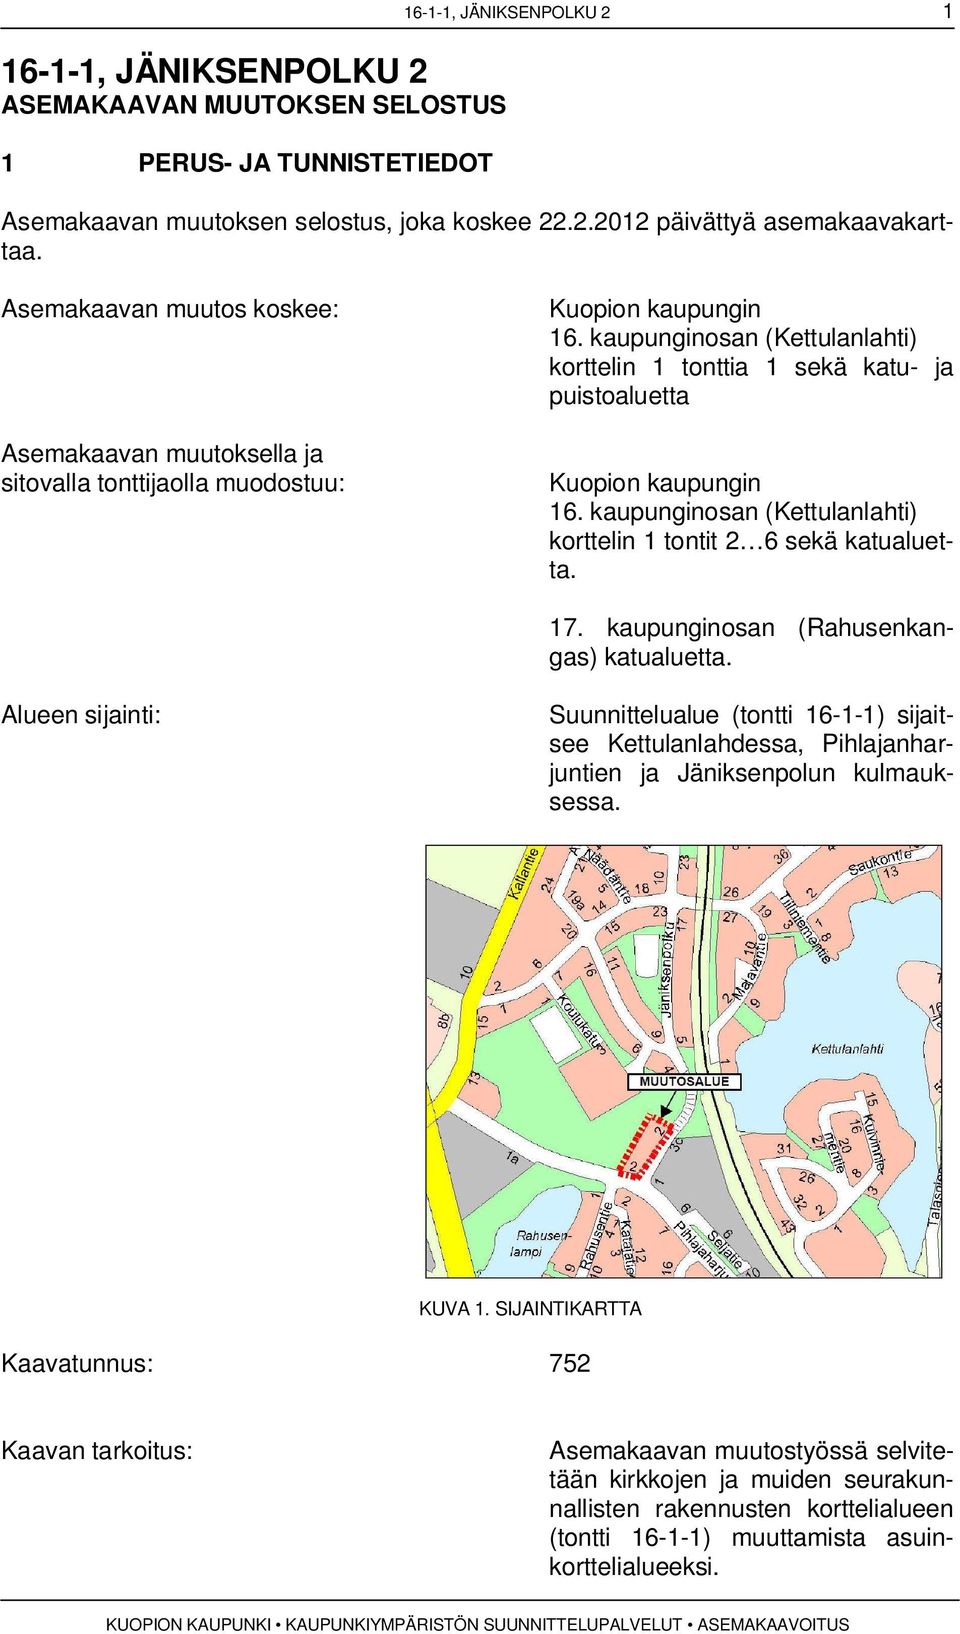 kaupunginosan (Kettulanlahti) korttelin 1 tonttia 1 sekä katu- ja puistoaluetta Kuopion kaupungin 16. kaupunginosan (Kettulanlahti) korttelin 1 tontit 2 6 sekä katualuetta. 17.